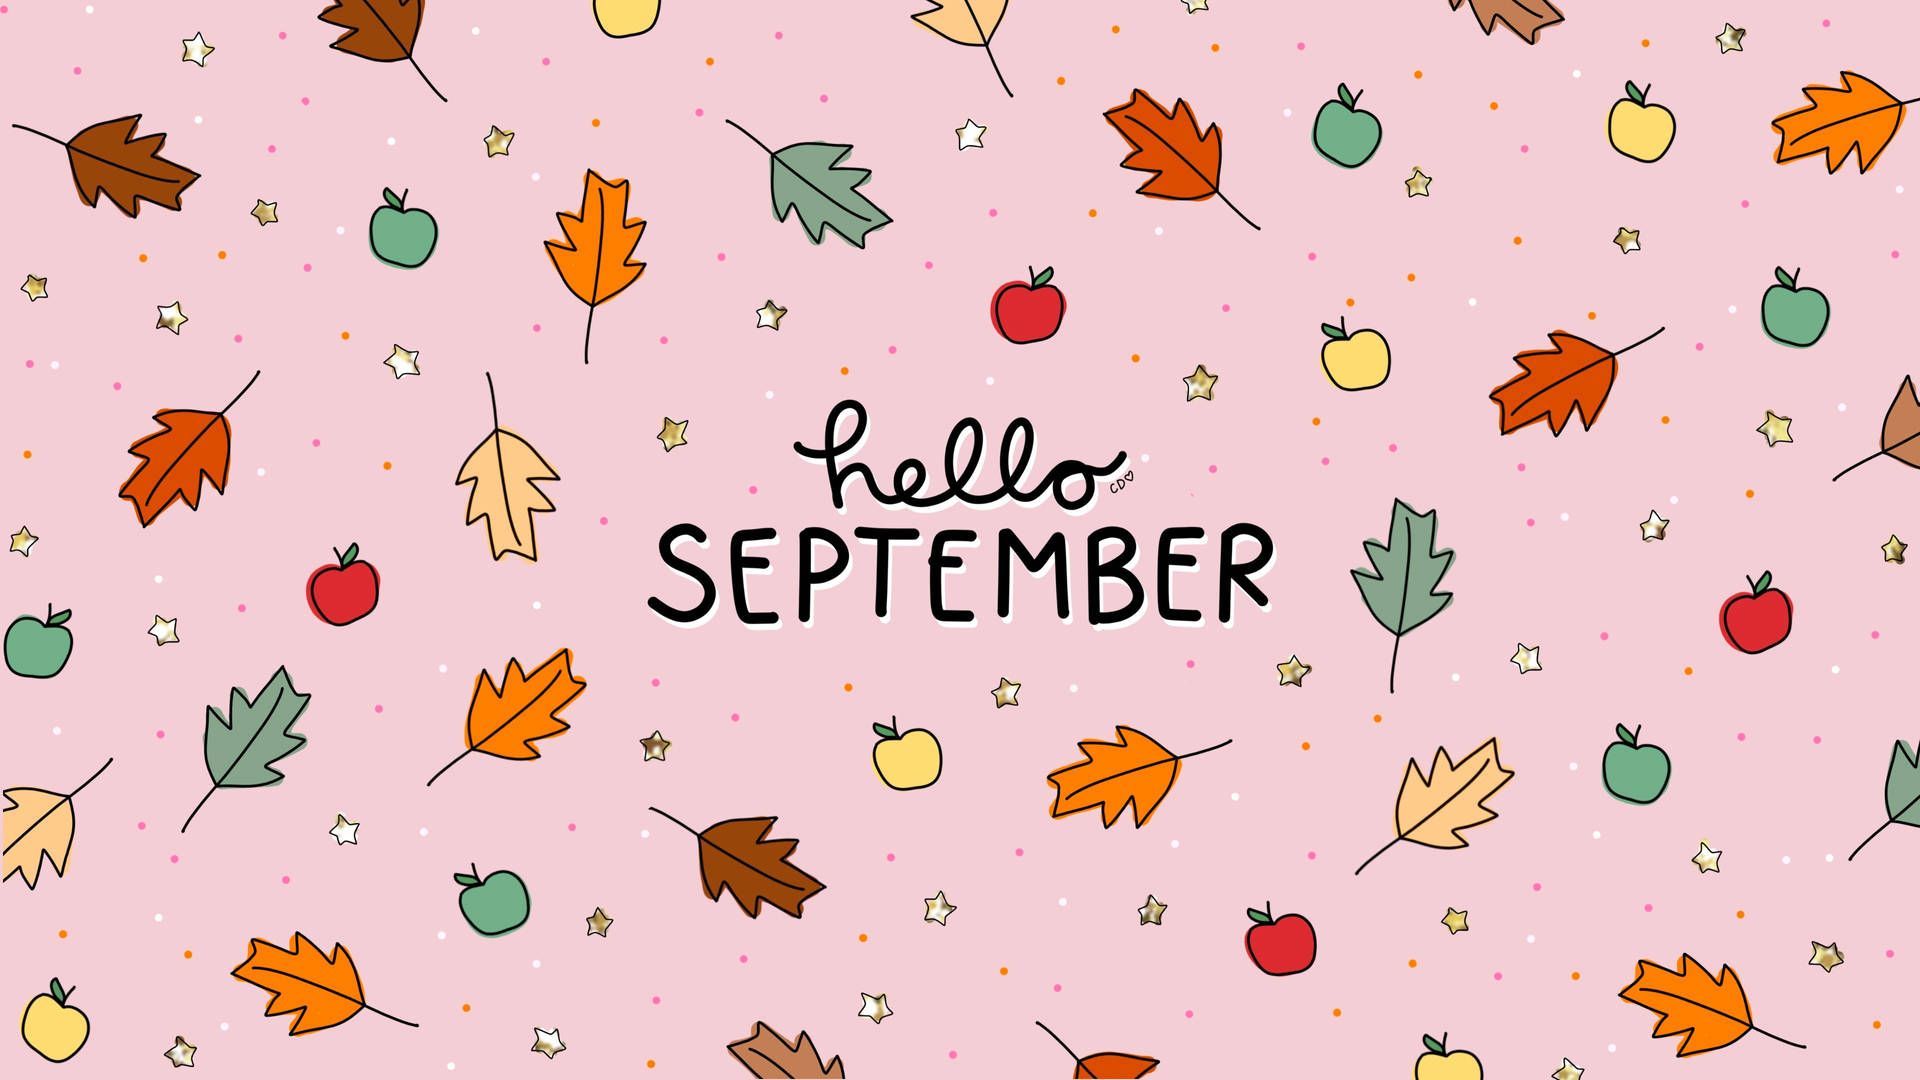 September Aesthetic Wallpapers - Top Free September Aesthetic ...